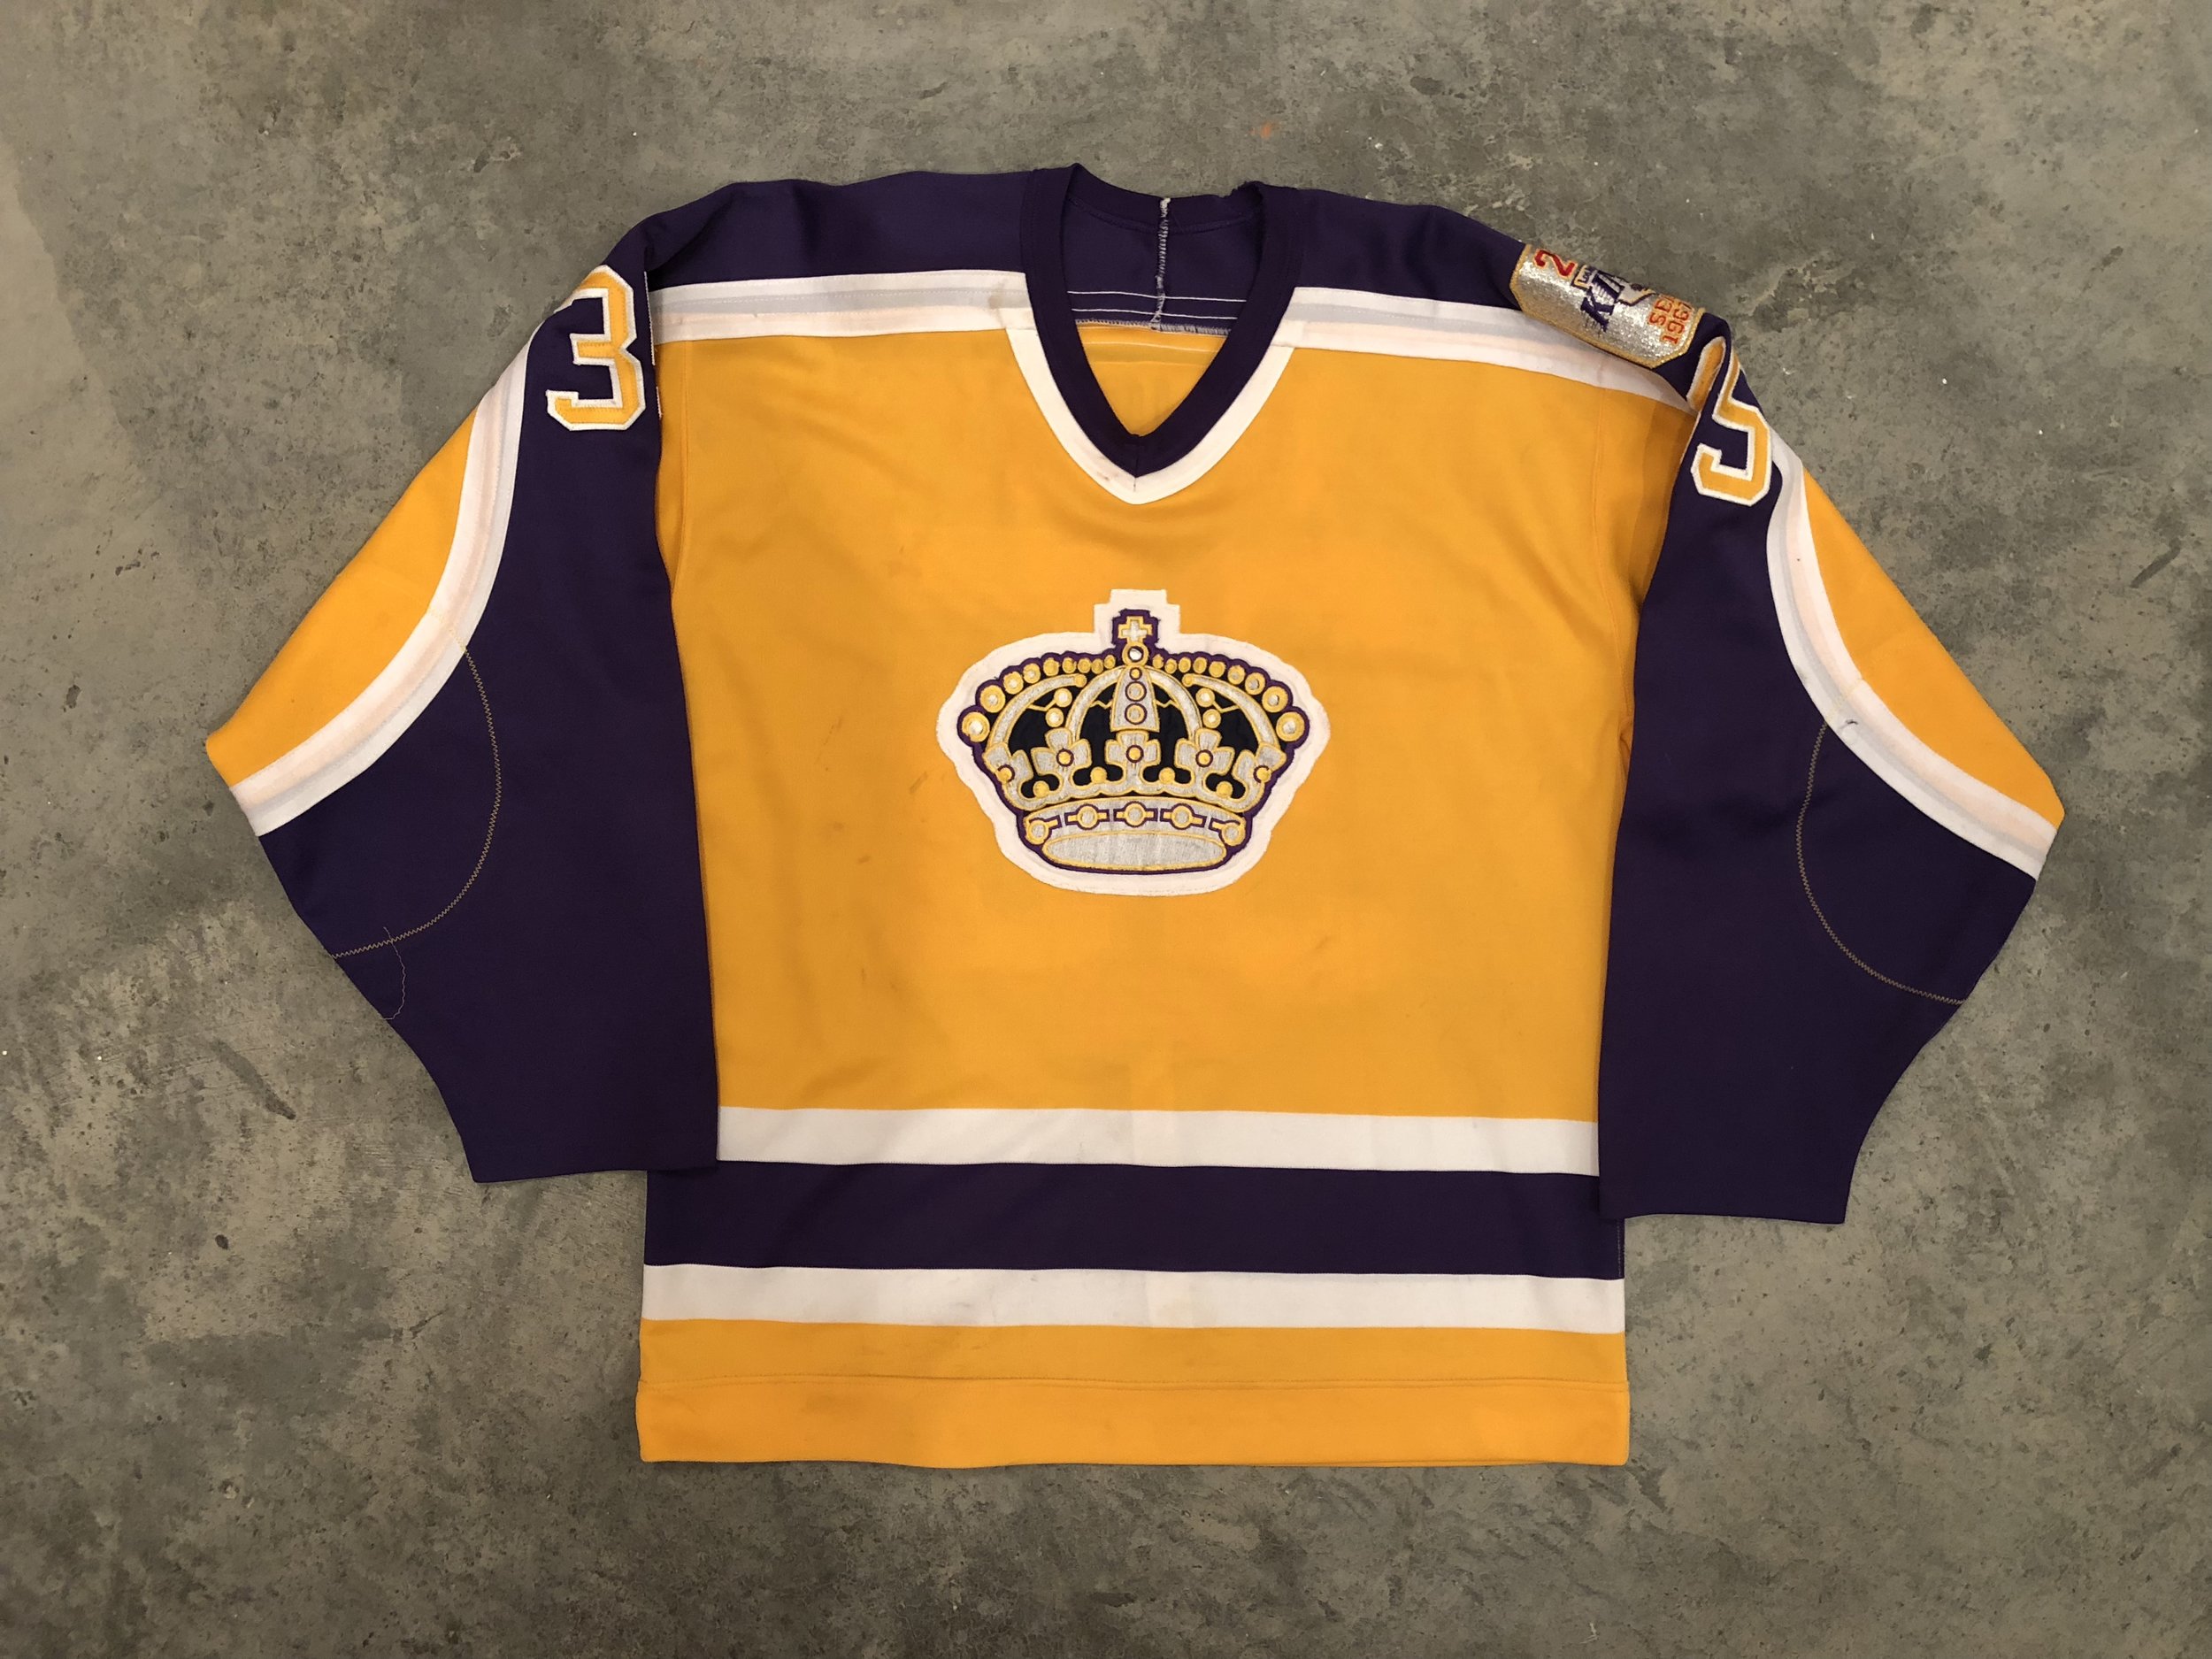 1985 Los Angeles Kings Vintage Hockey Jerseys